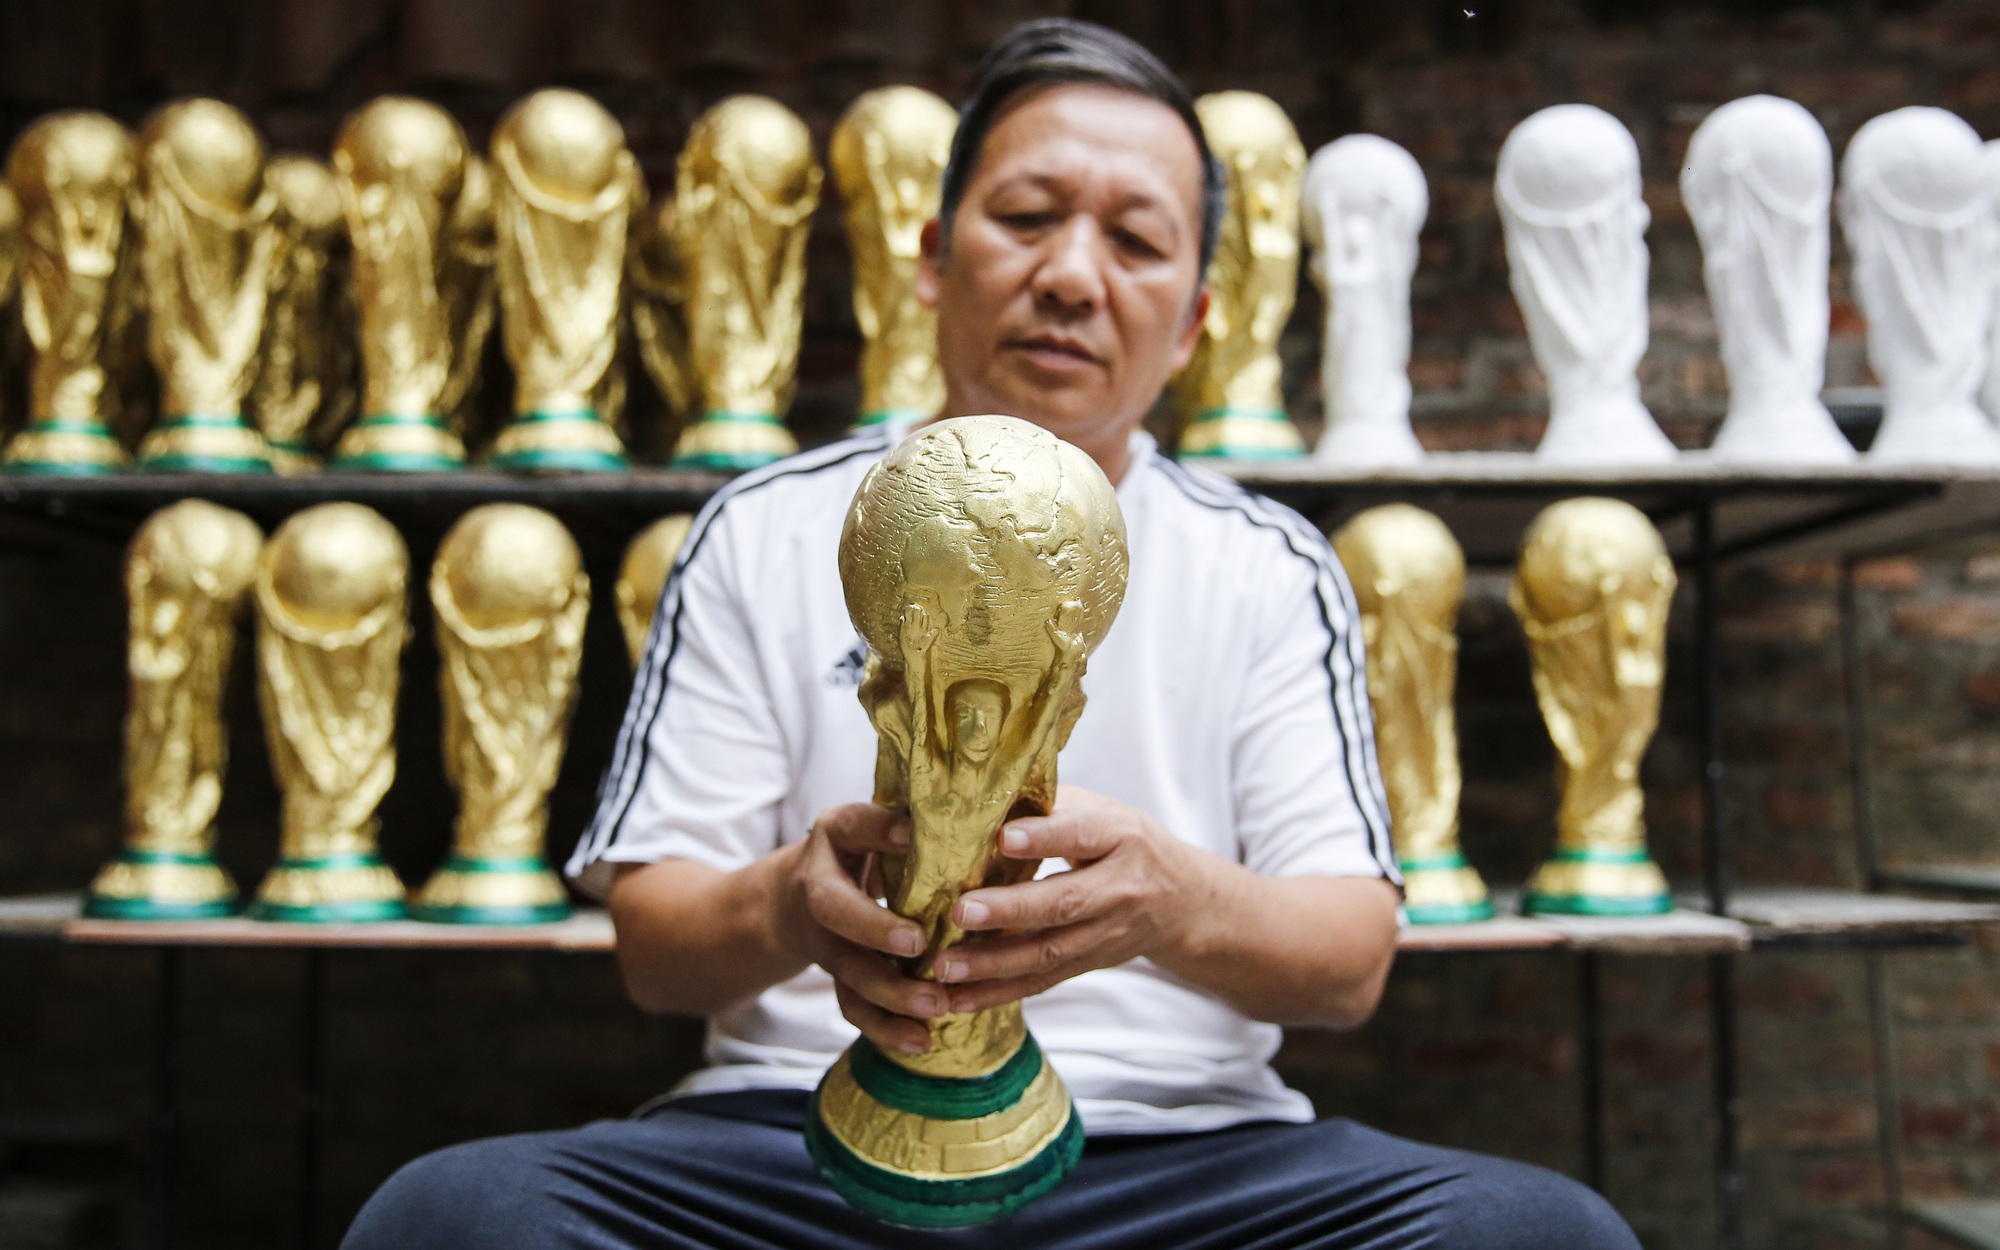 Cúp vàng World Cup Qatar 2022 giá 70.000 đồng xuất hiện tại Hà Nội